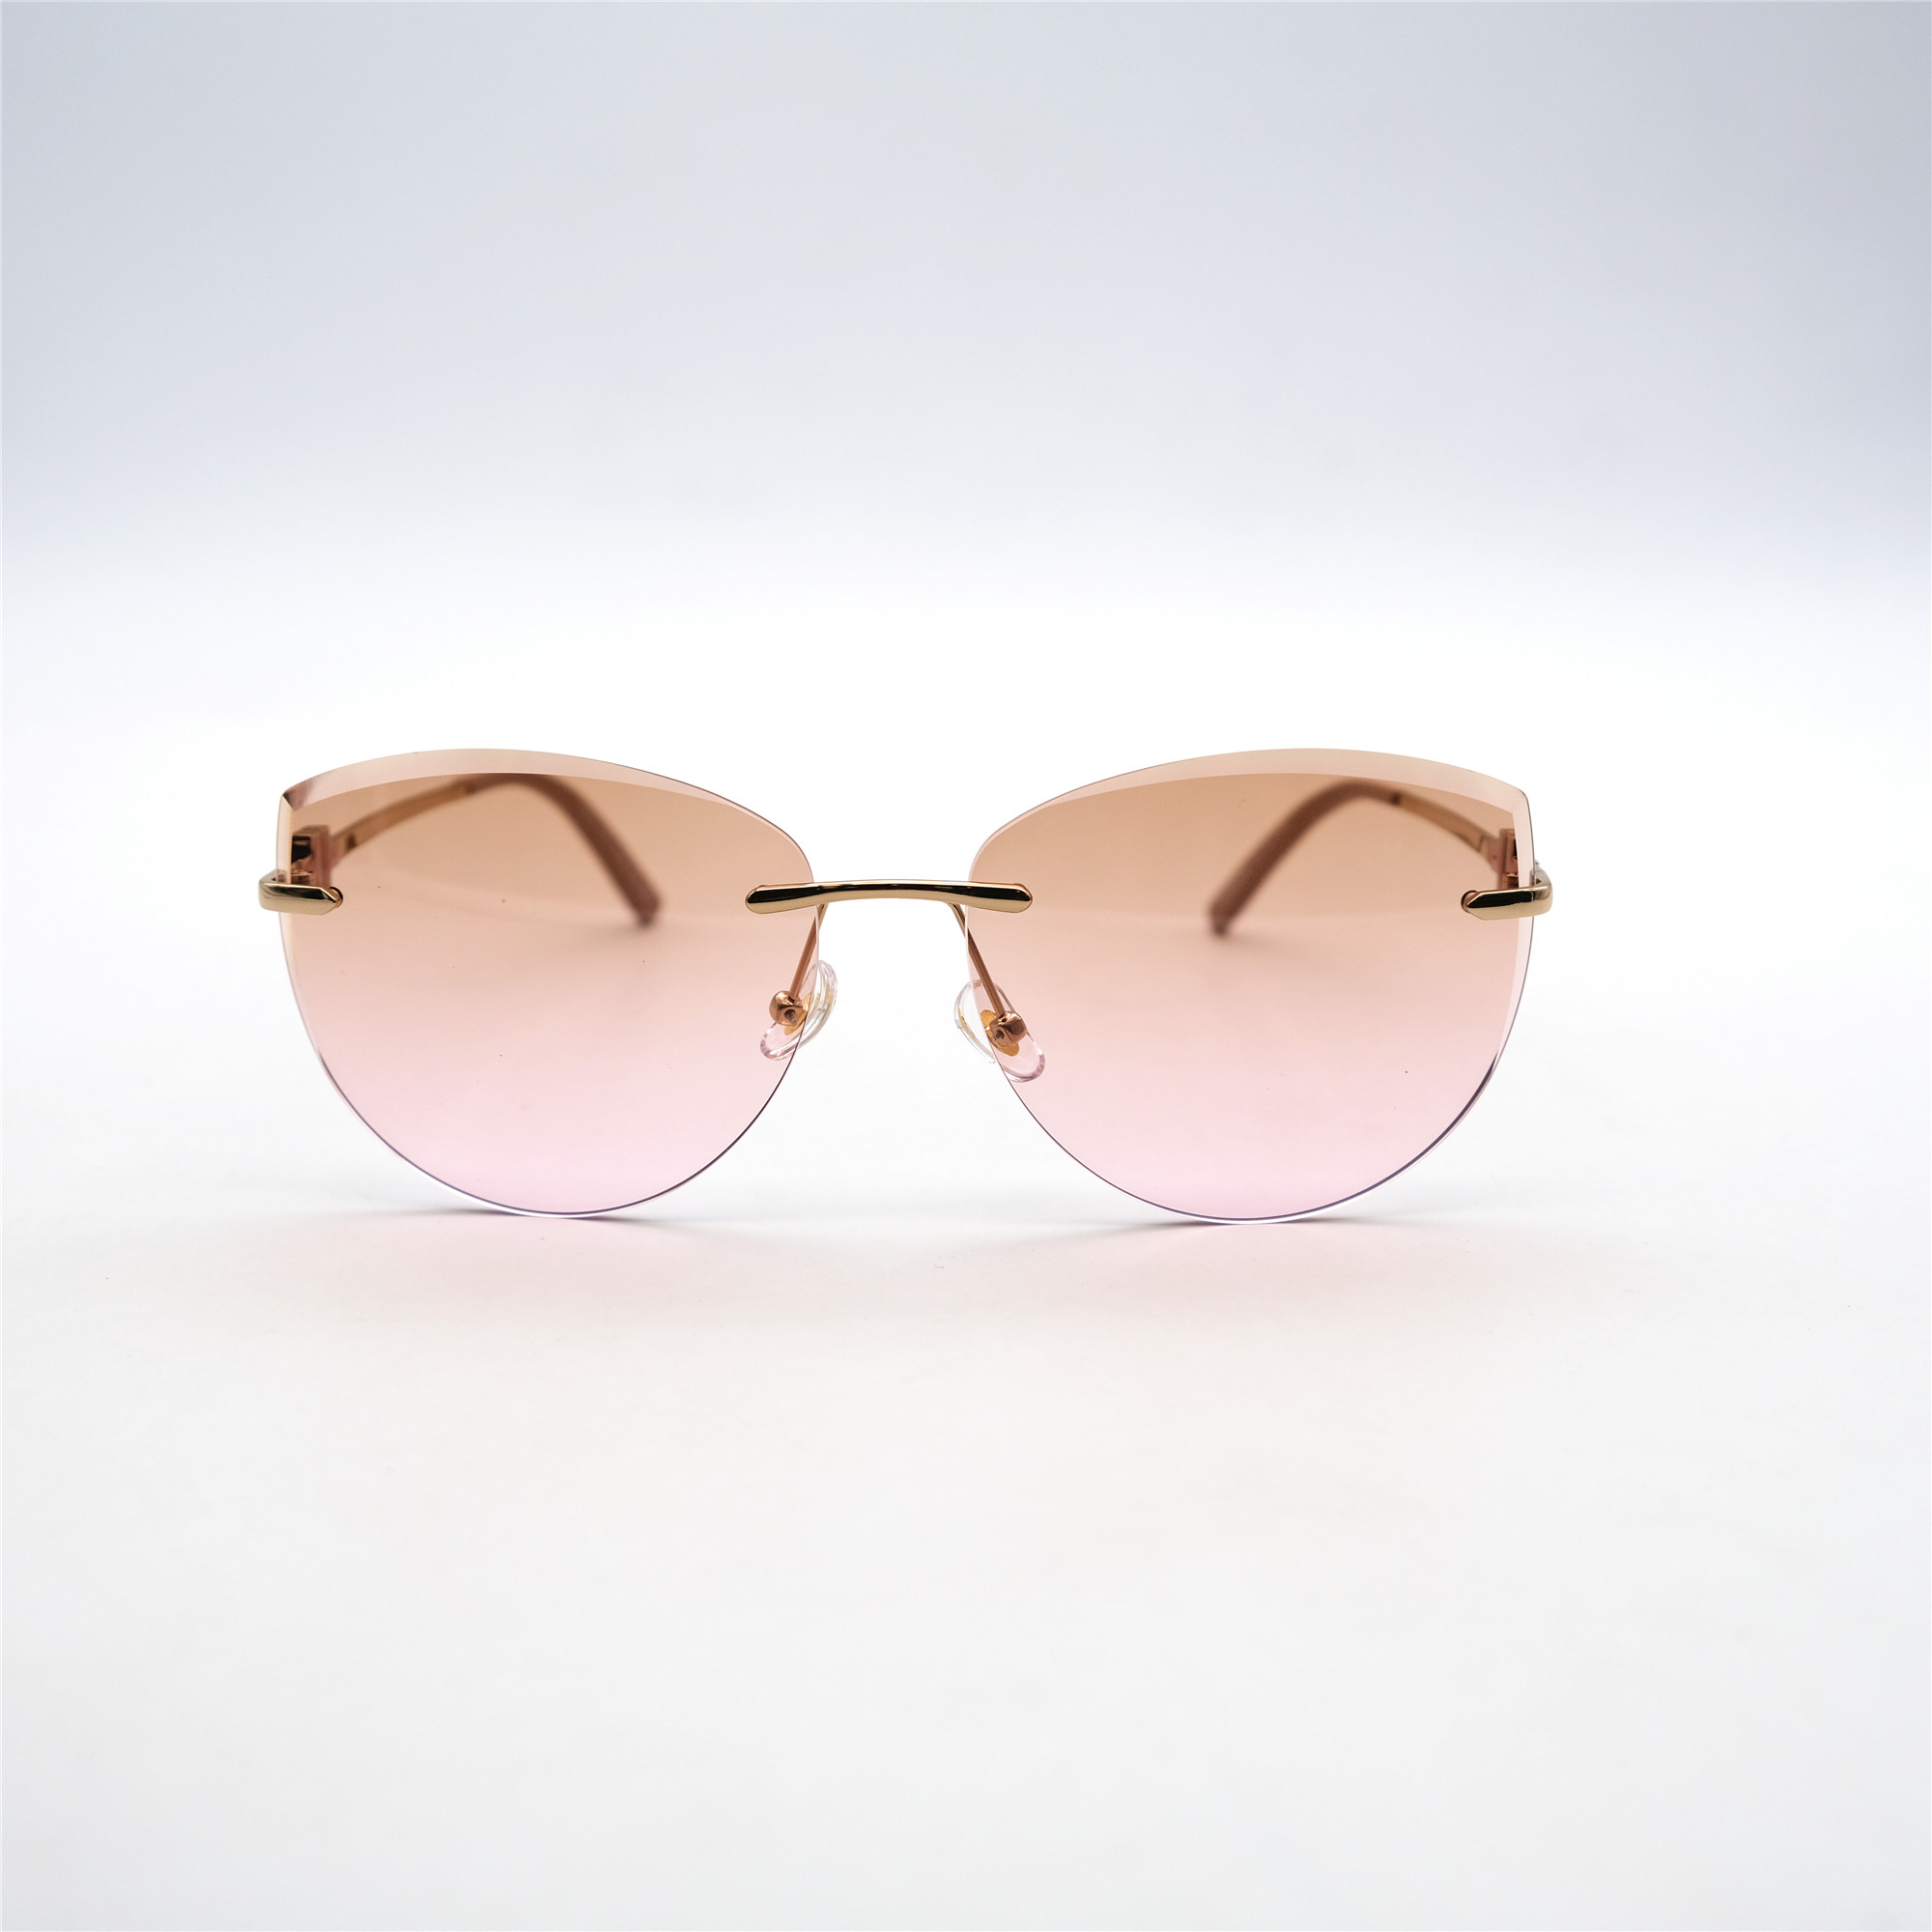  Солнцезащитные очки картинка Женские Yamanni  Авиаторы D2503-C8-13 